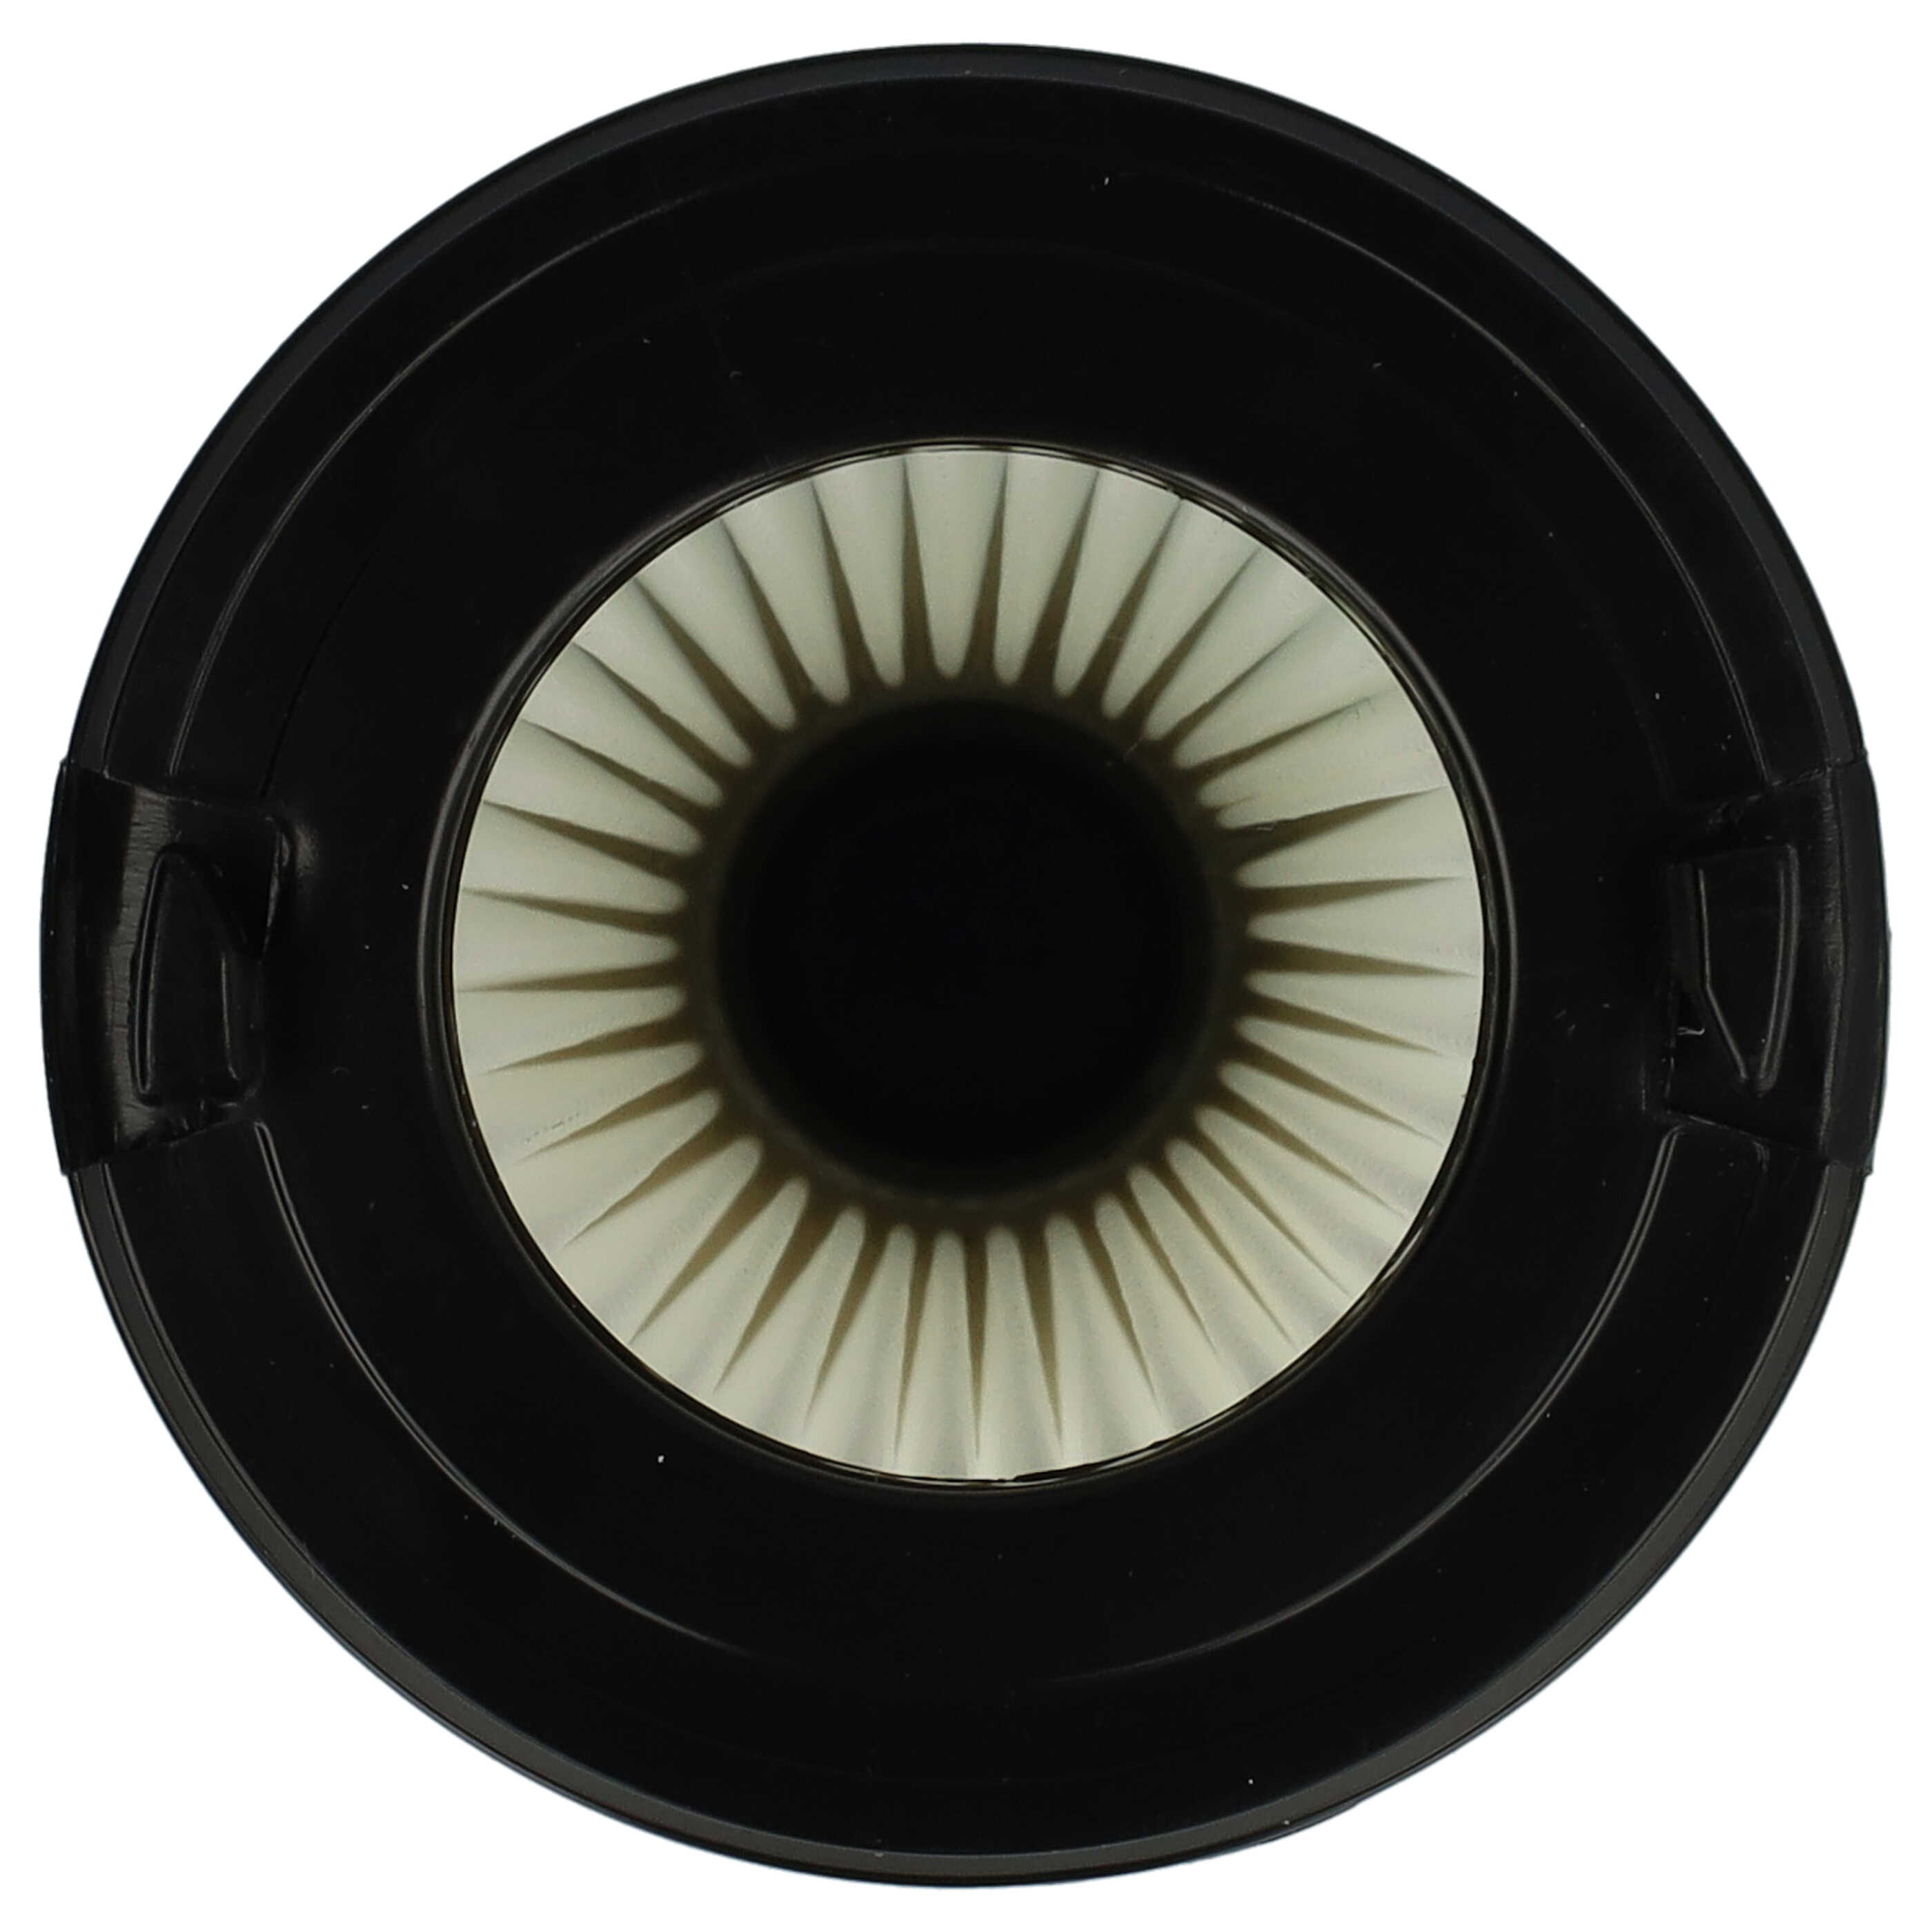 2x Filtre remplace AEG AEF150, 9001683755, 90094073100 pour aspirateur - filtre à lamelles